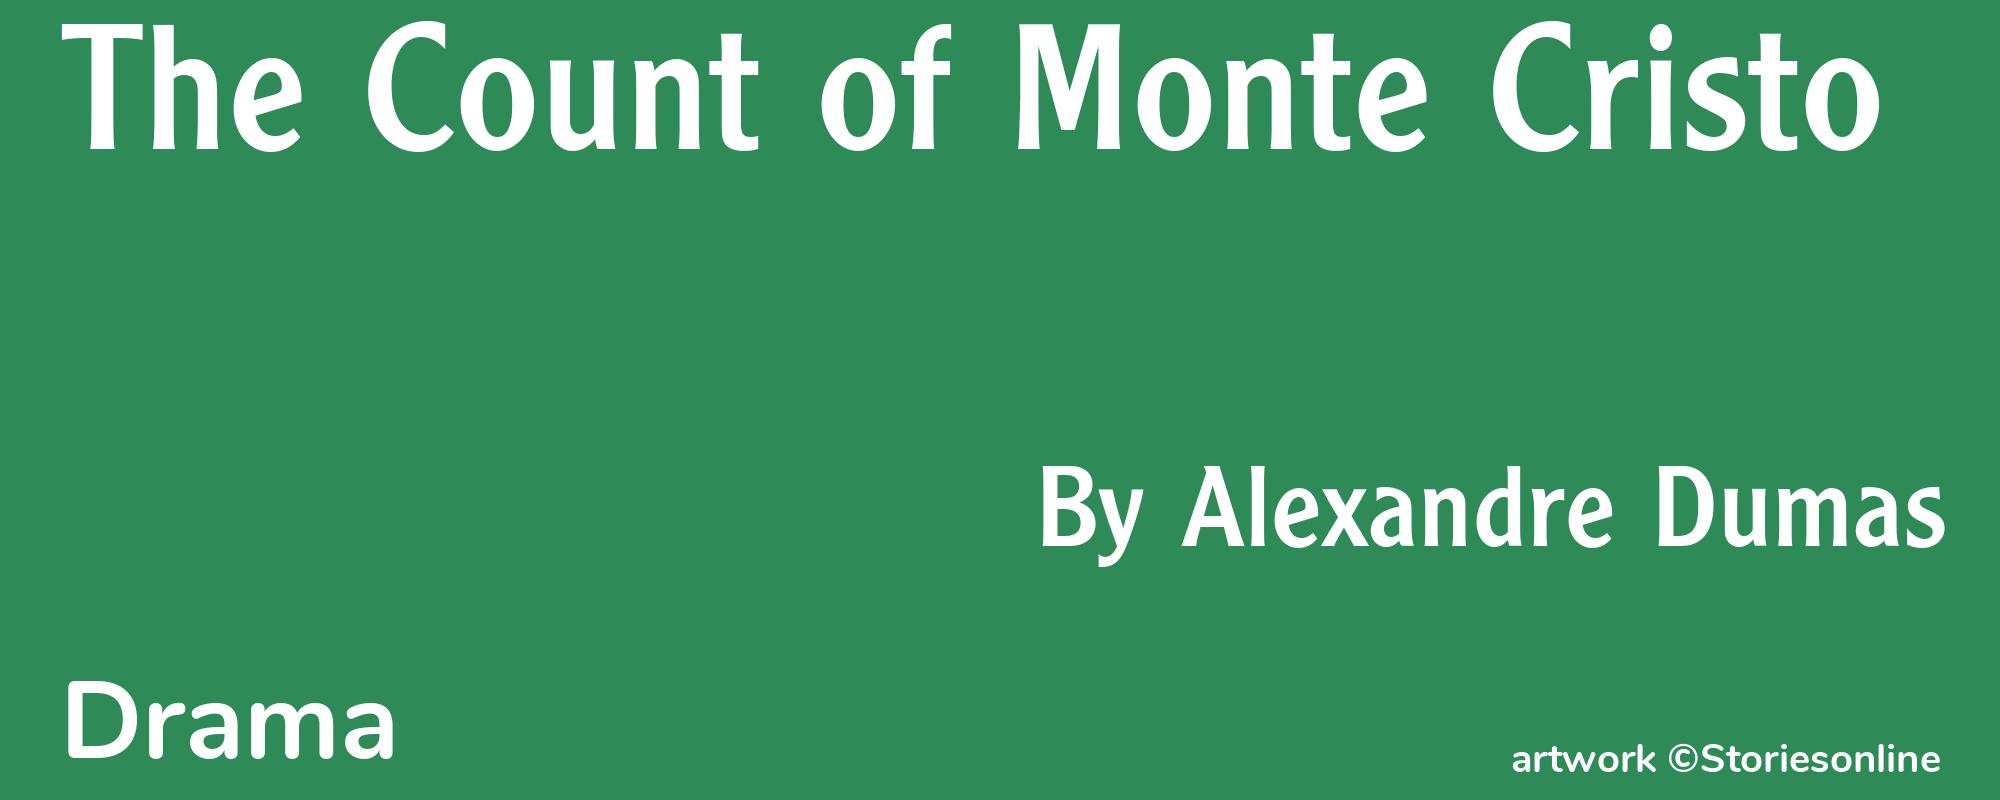 The Count of Monte Cristo - Cover